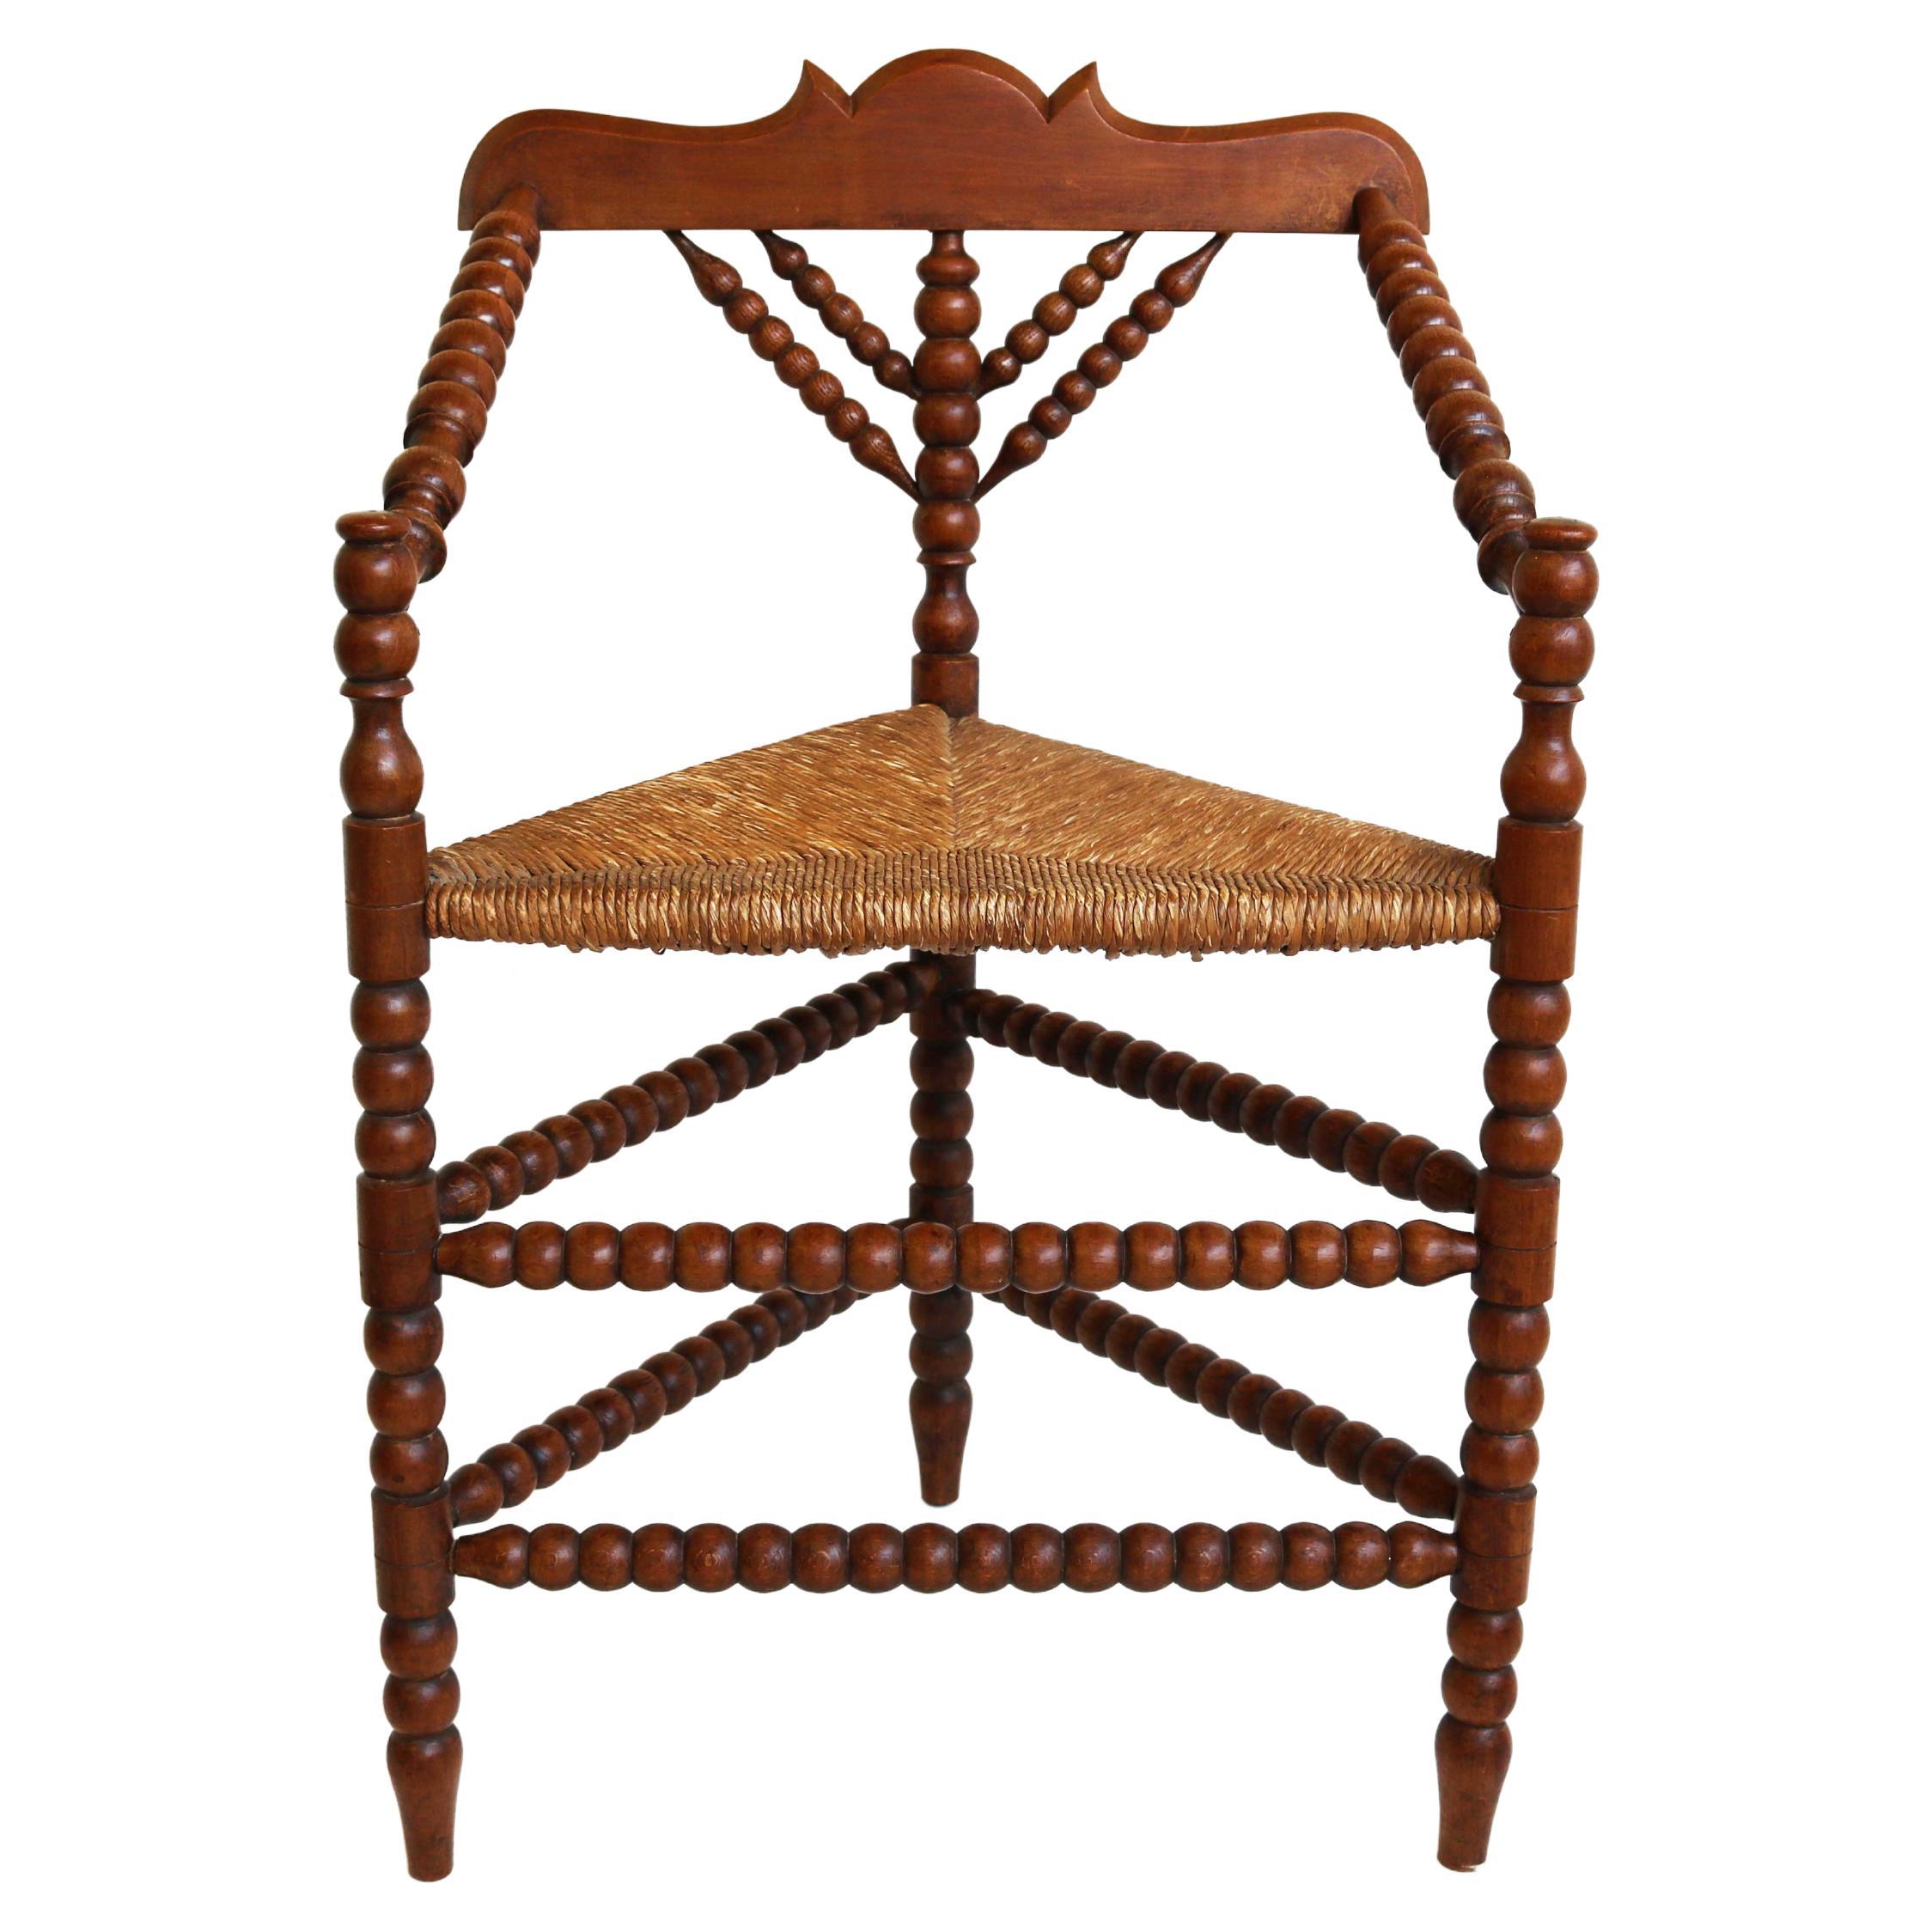 Fauteuil néerlandais ancien triangulaire tourné, chaise d'angle Bobbin, siège en jonc, rustique